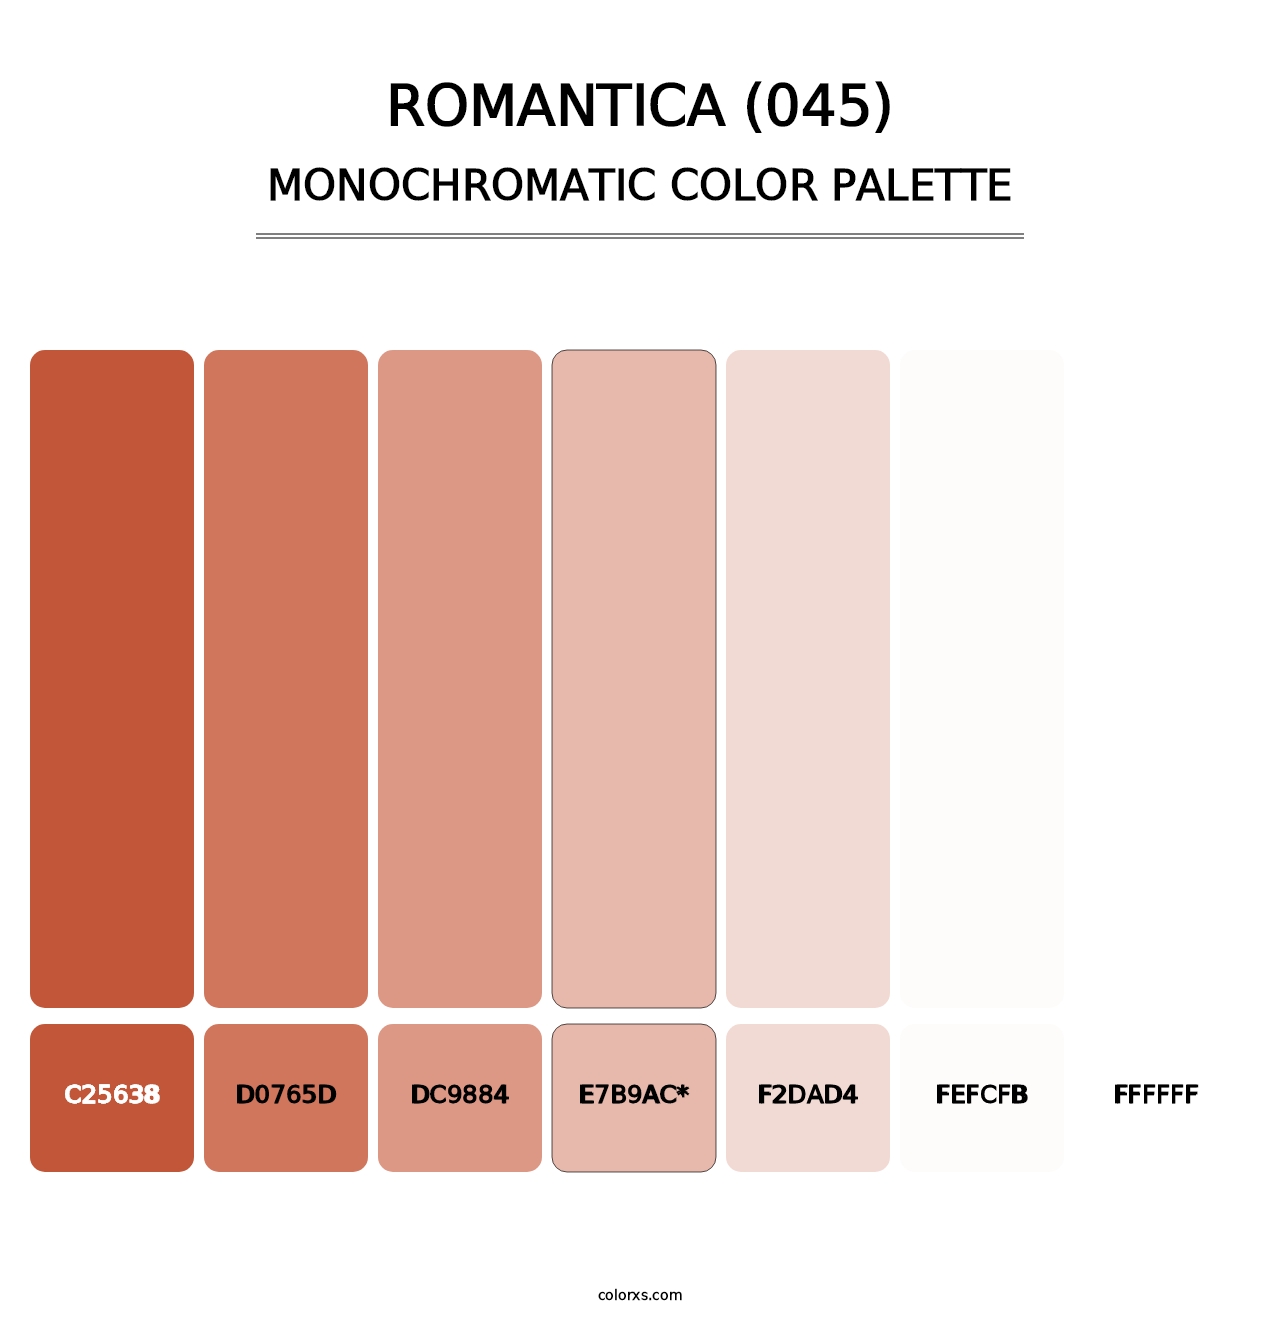 Romantica (045) - Monochromatic Color Palette